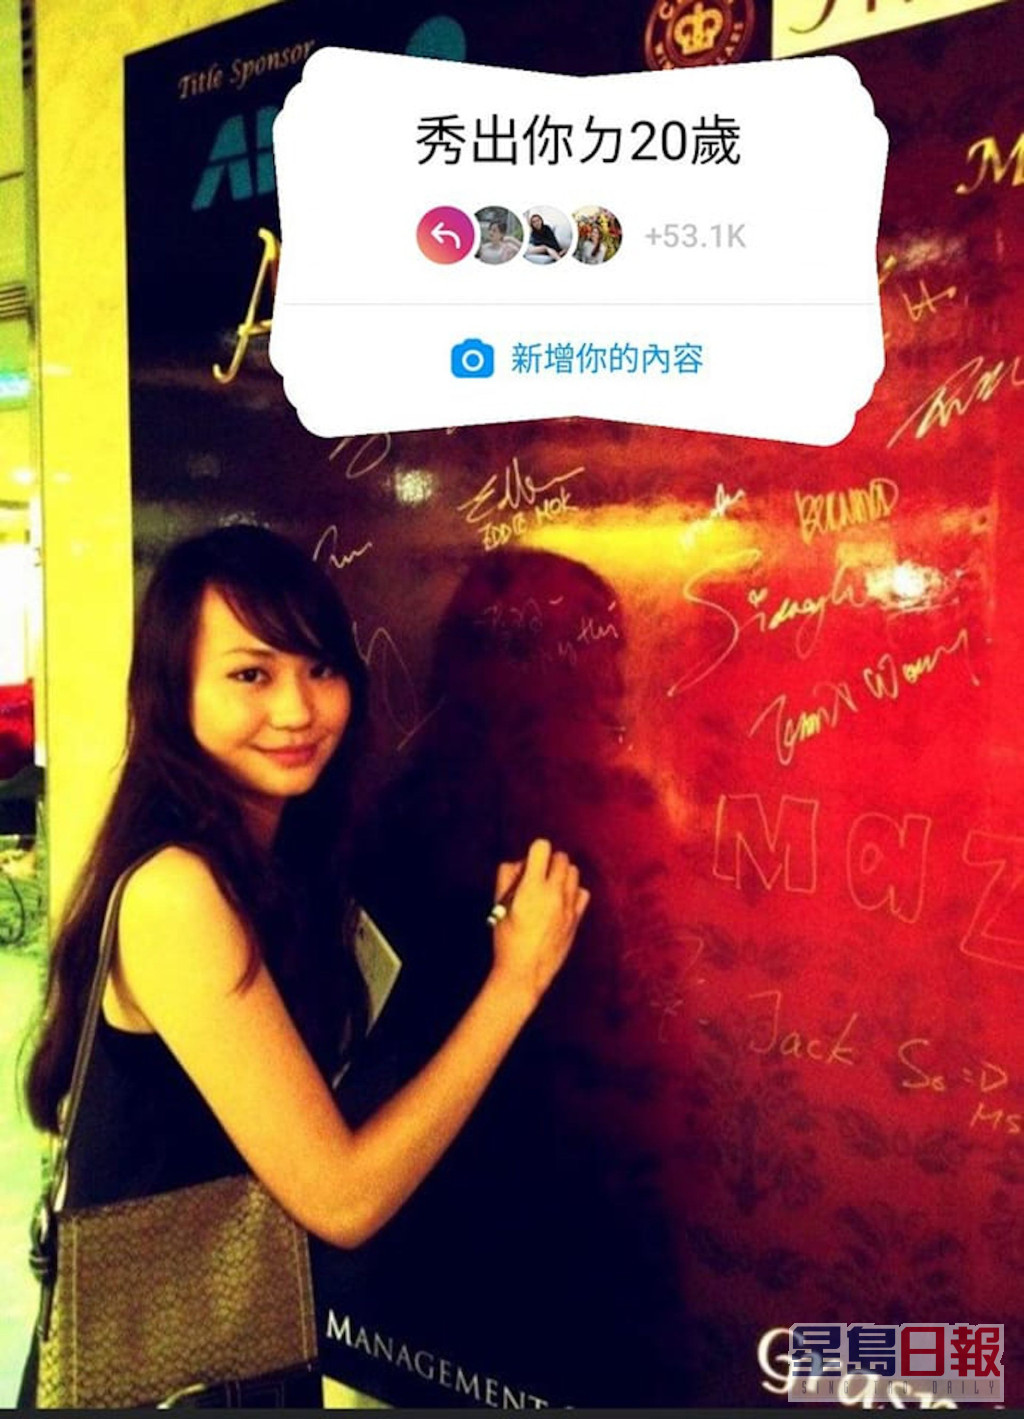 刚离巢TVB的麦诗敏早前已曾晒旧照。